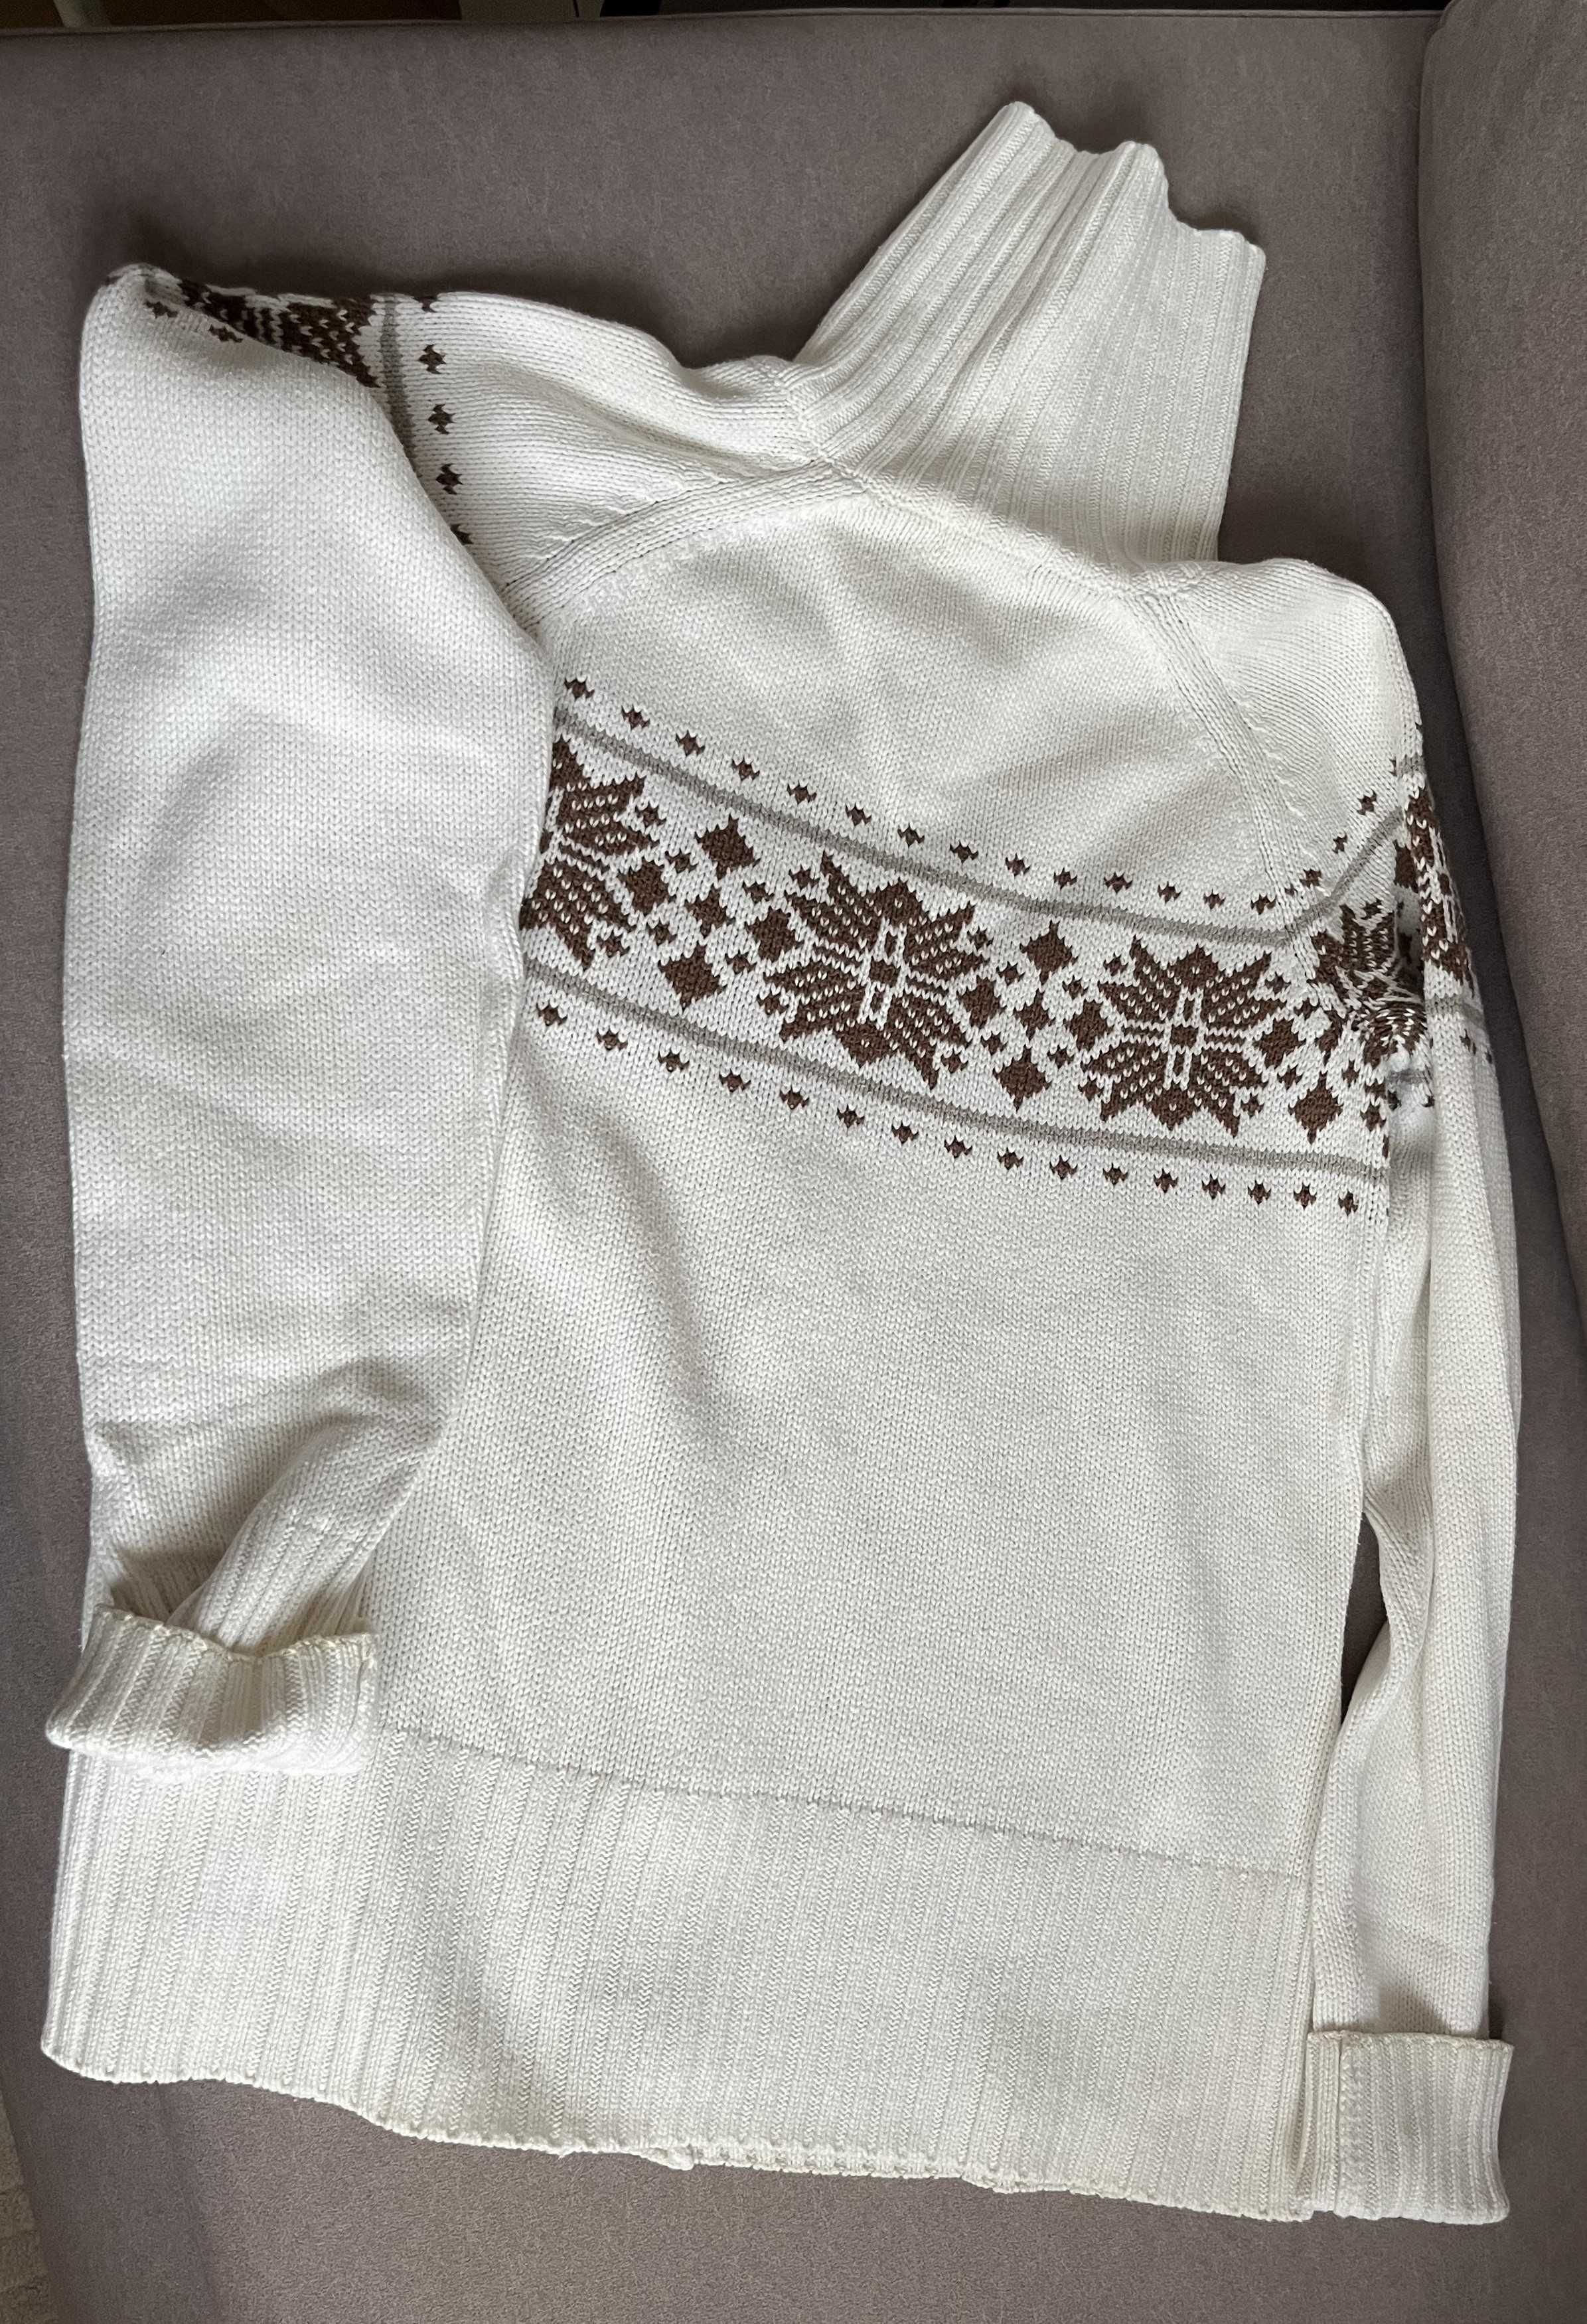 biały sweter w norweski wzór, bawełna+elastan , rozm. 40-42